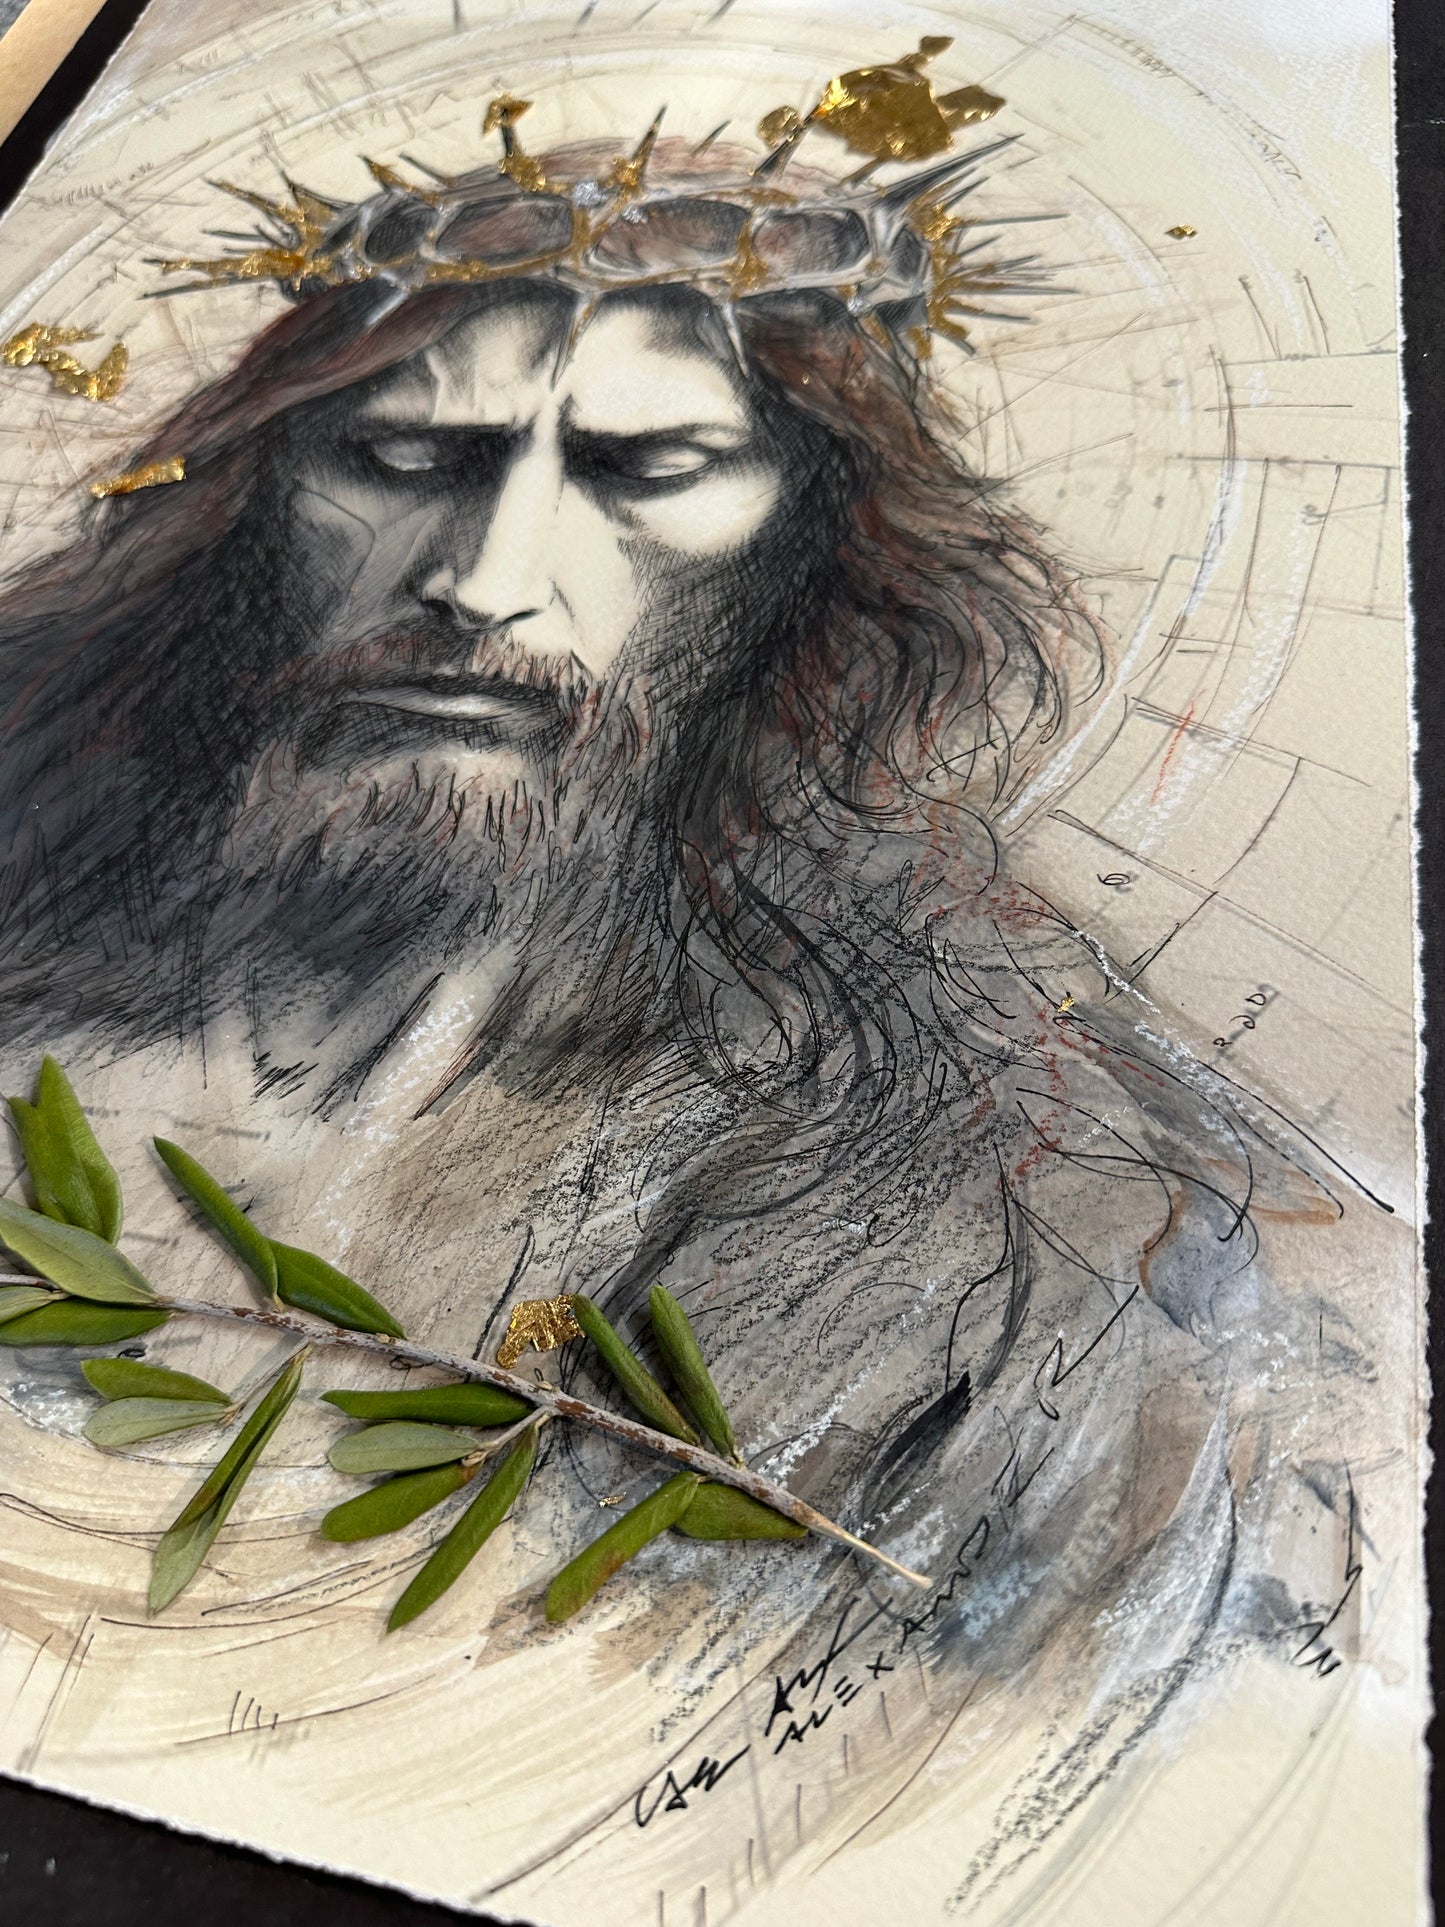 Lamb of God - Jesus Portrait Four